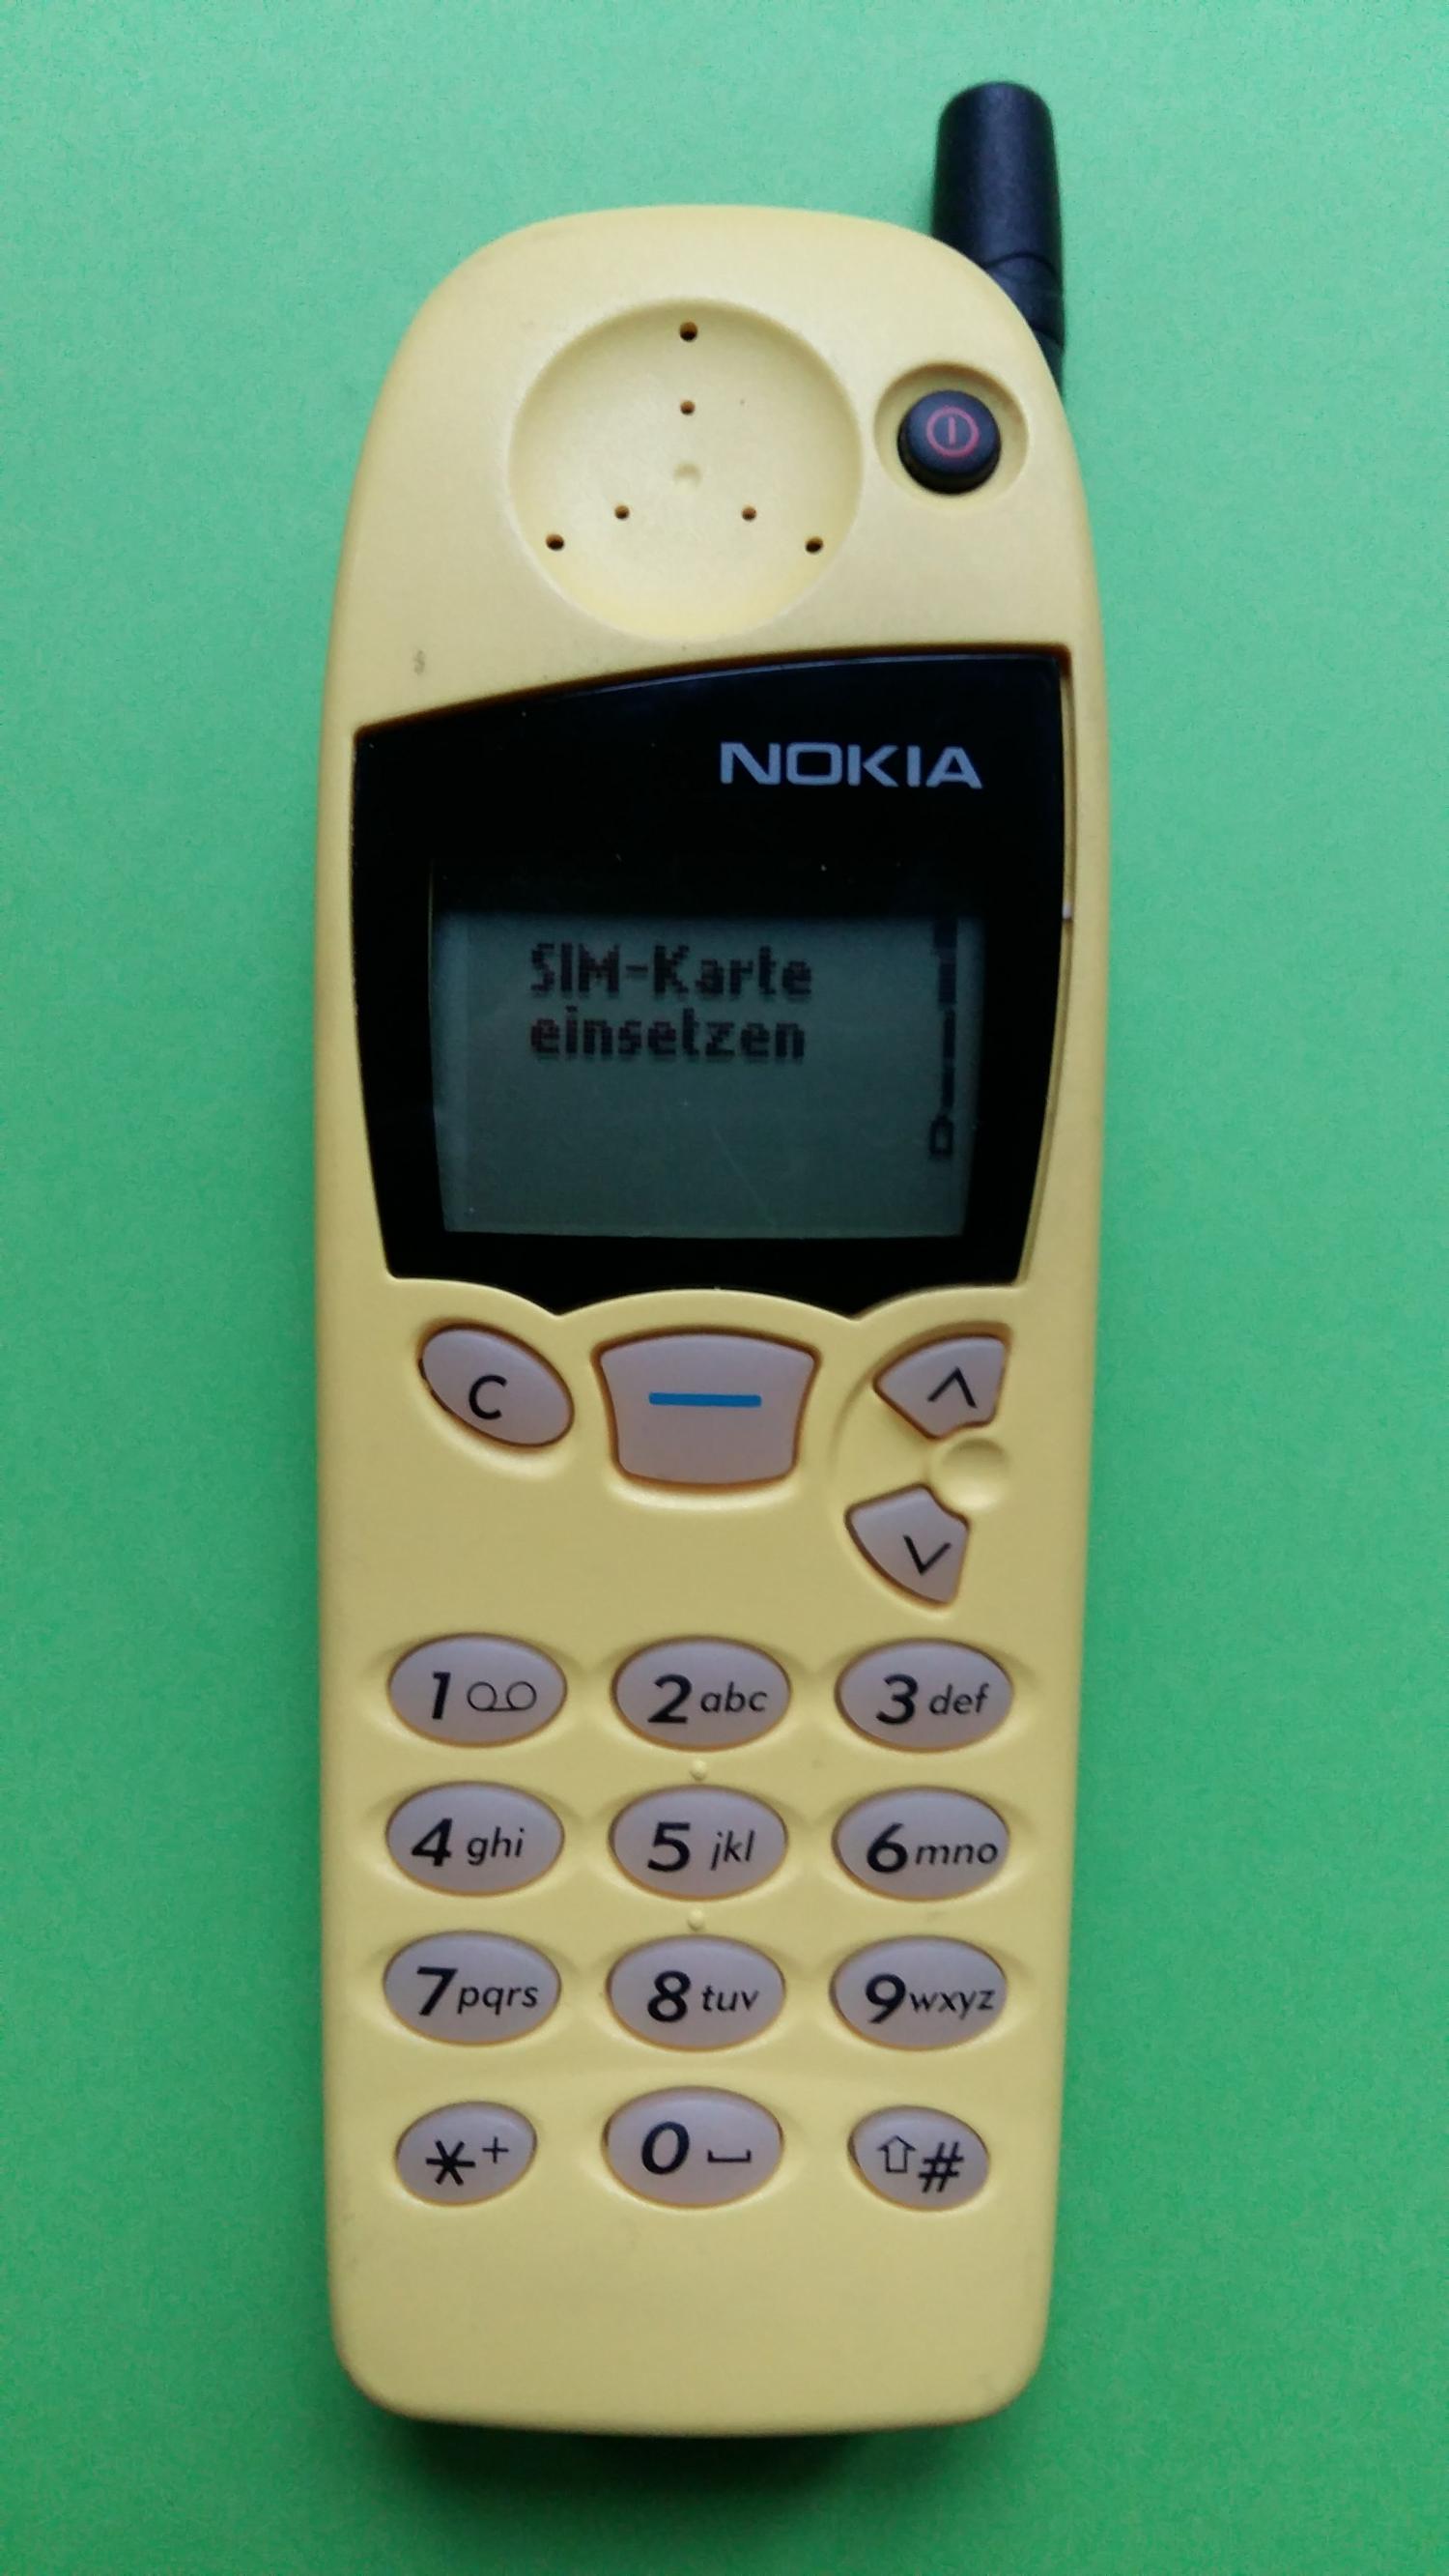 image-7304845-Nokia 5110 (10)1.jpg